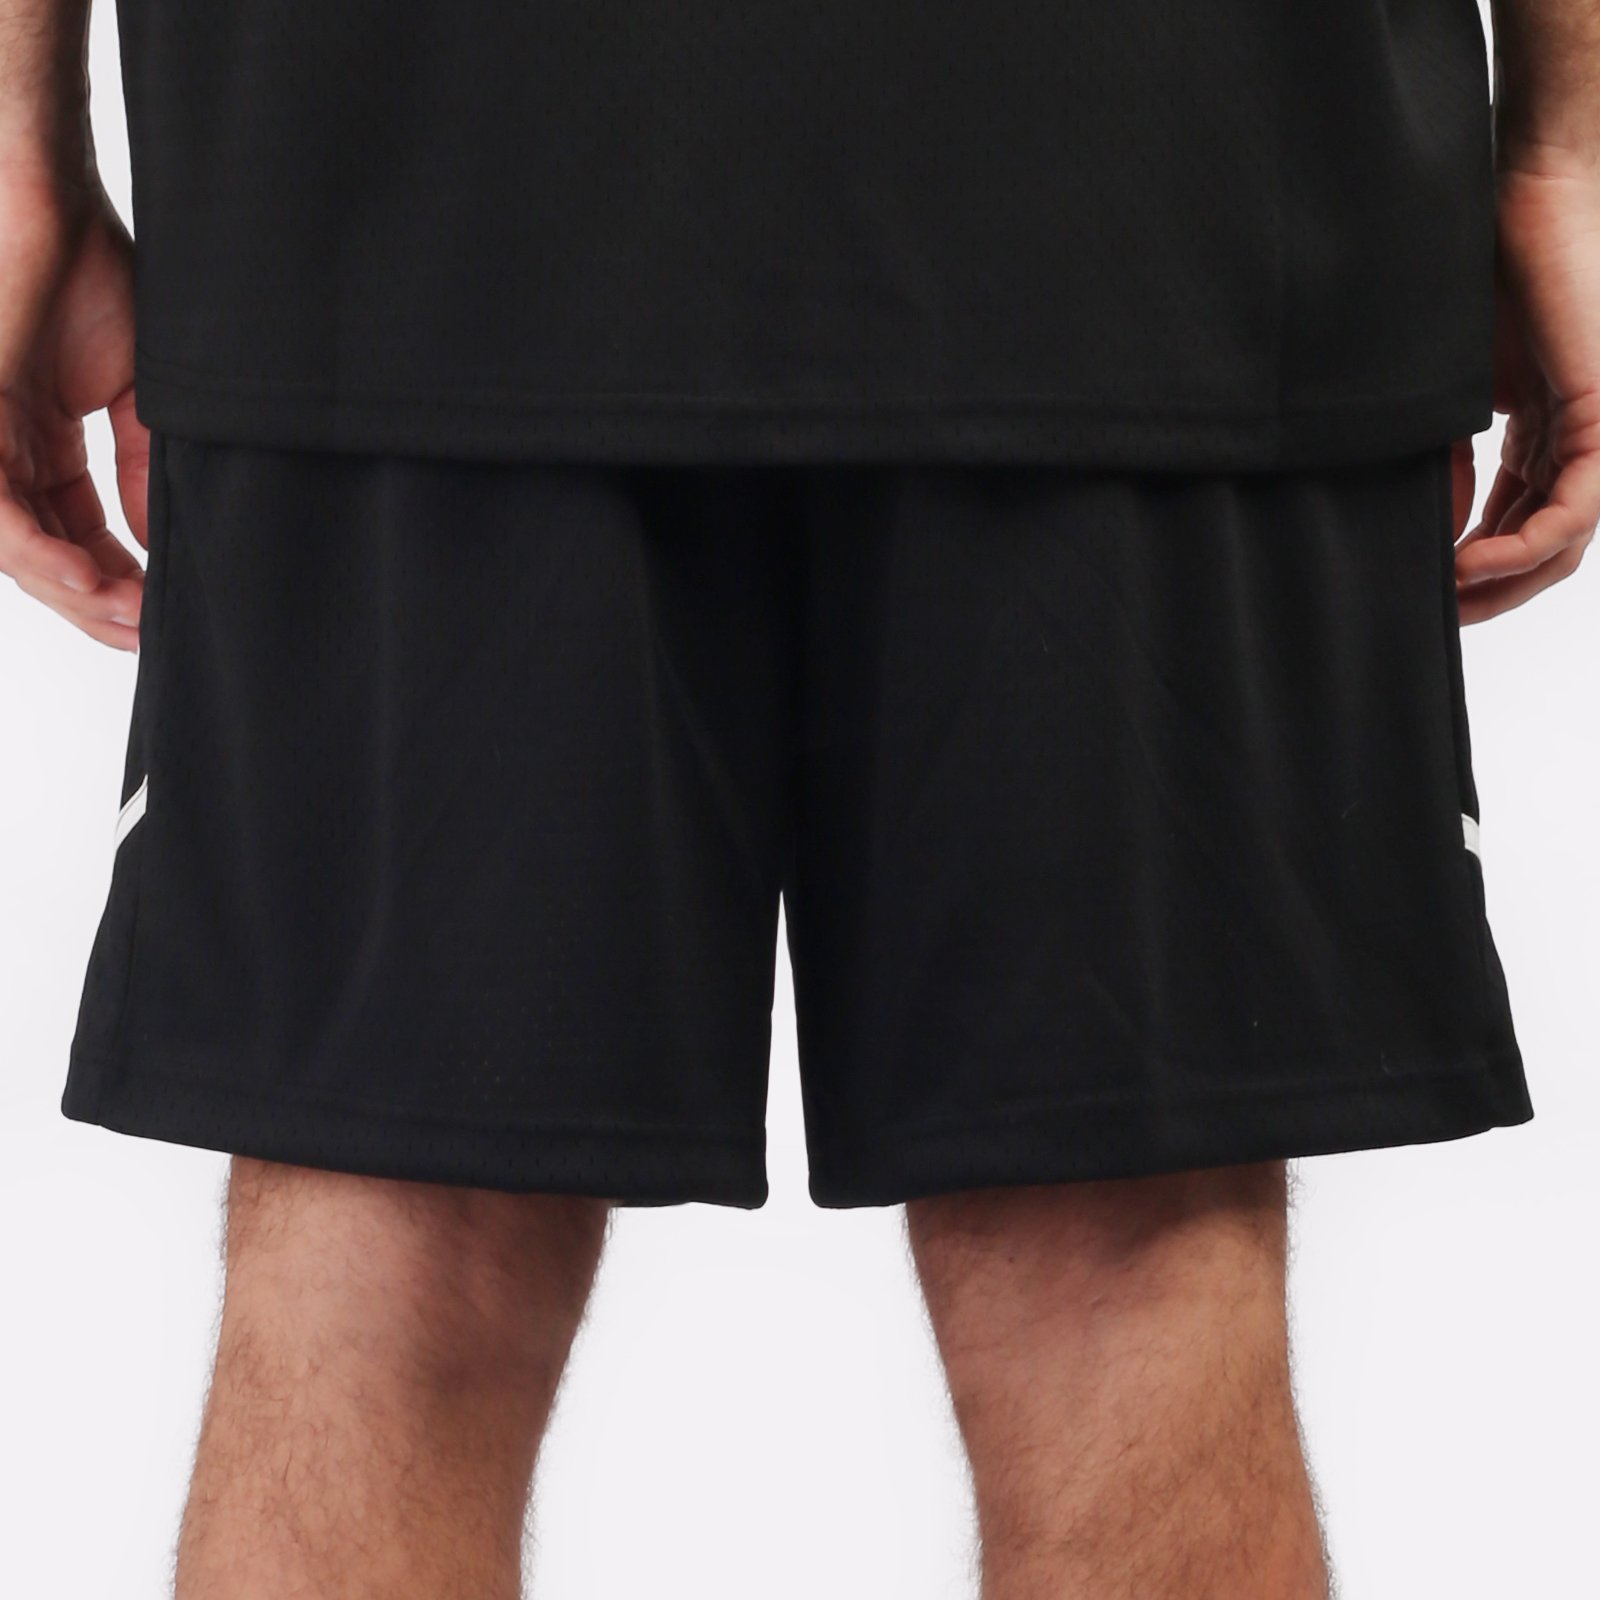 мужские черные шорты Hard Teammate Teammate short-blk/wht - цена, описание, фото 2